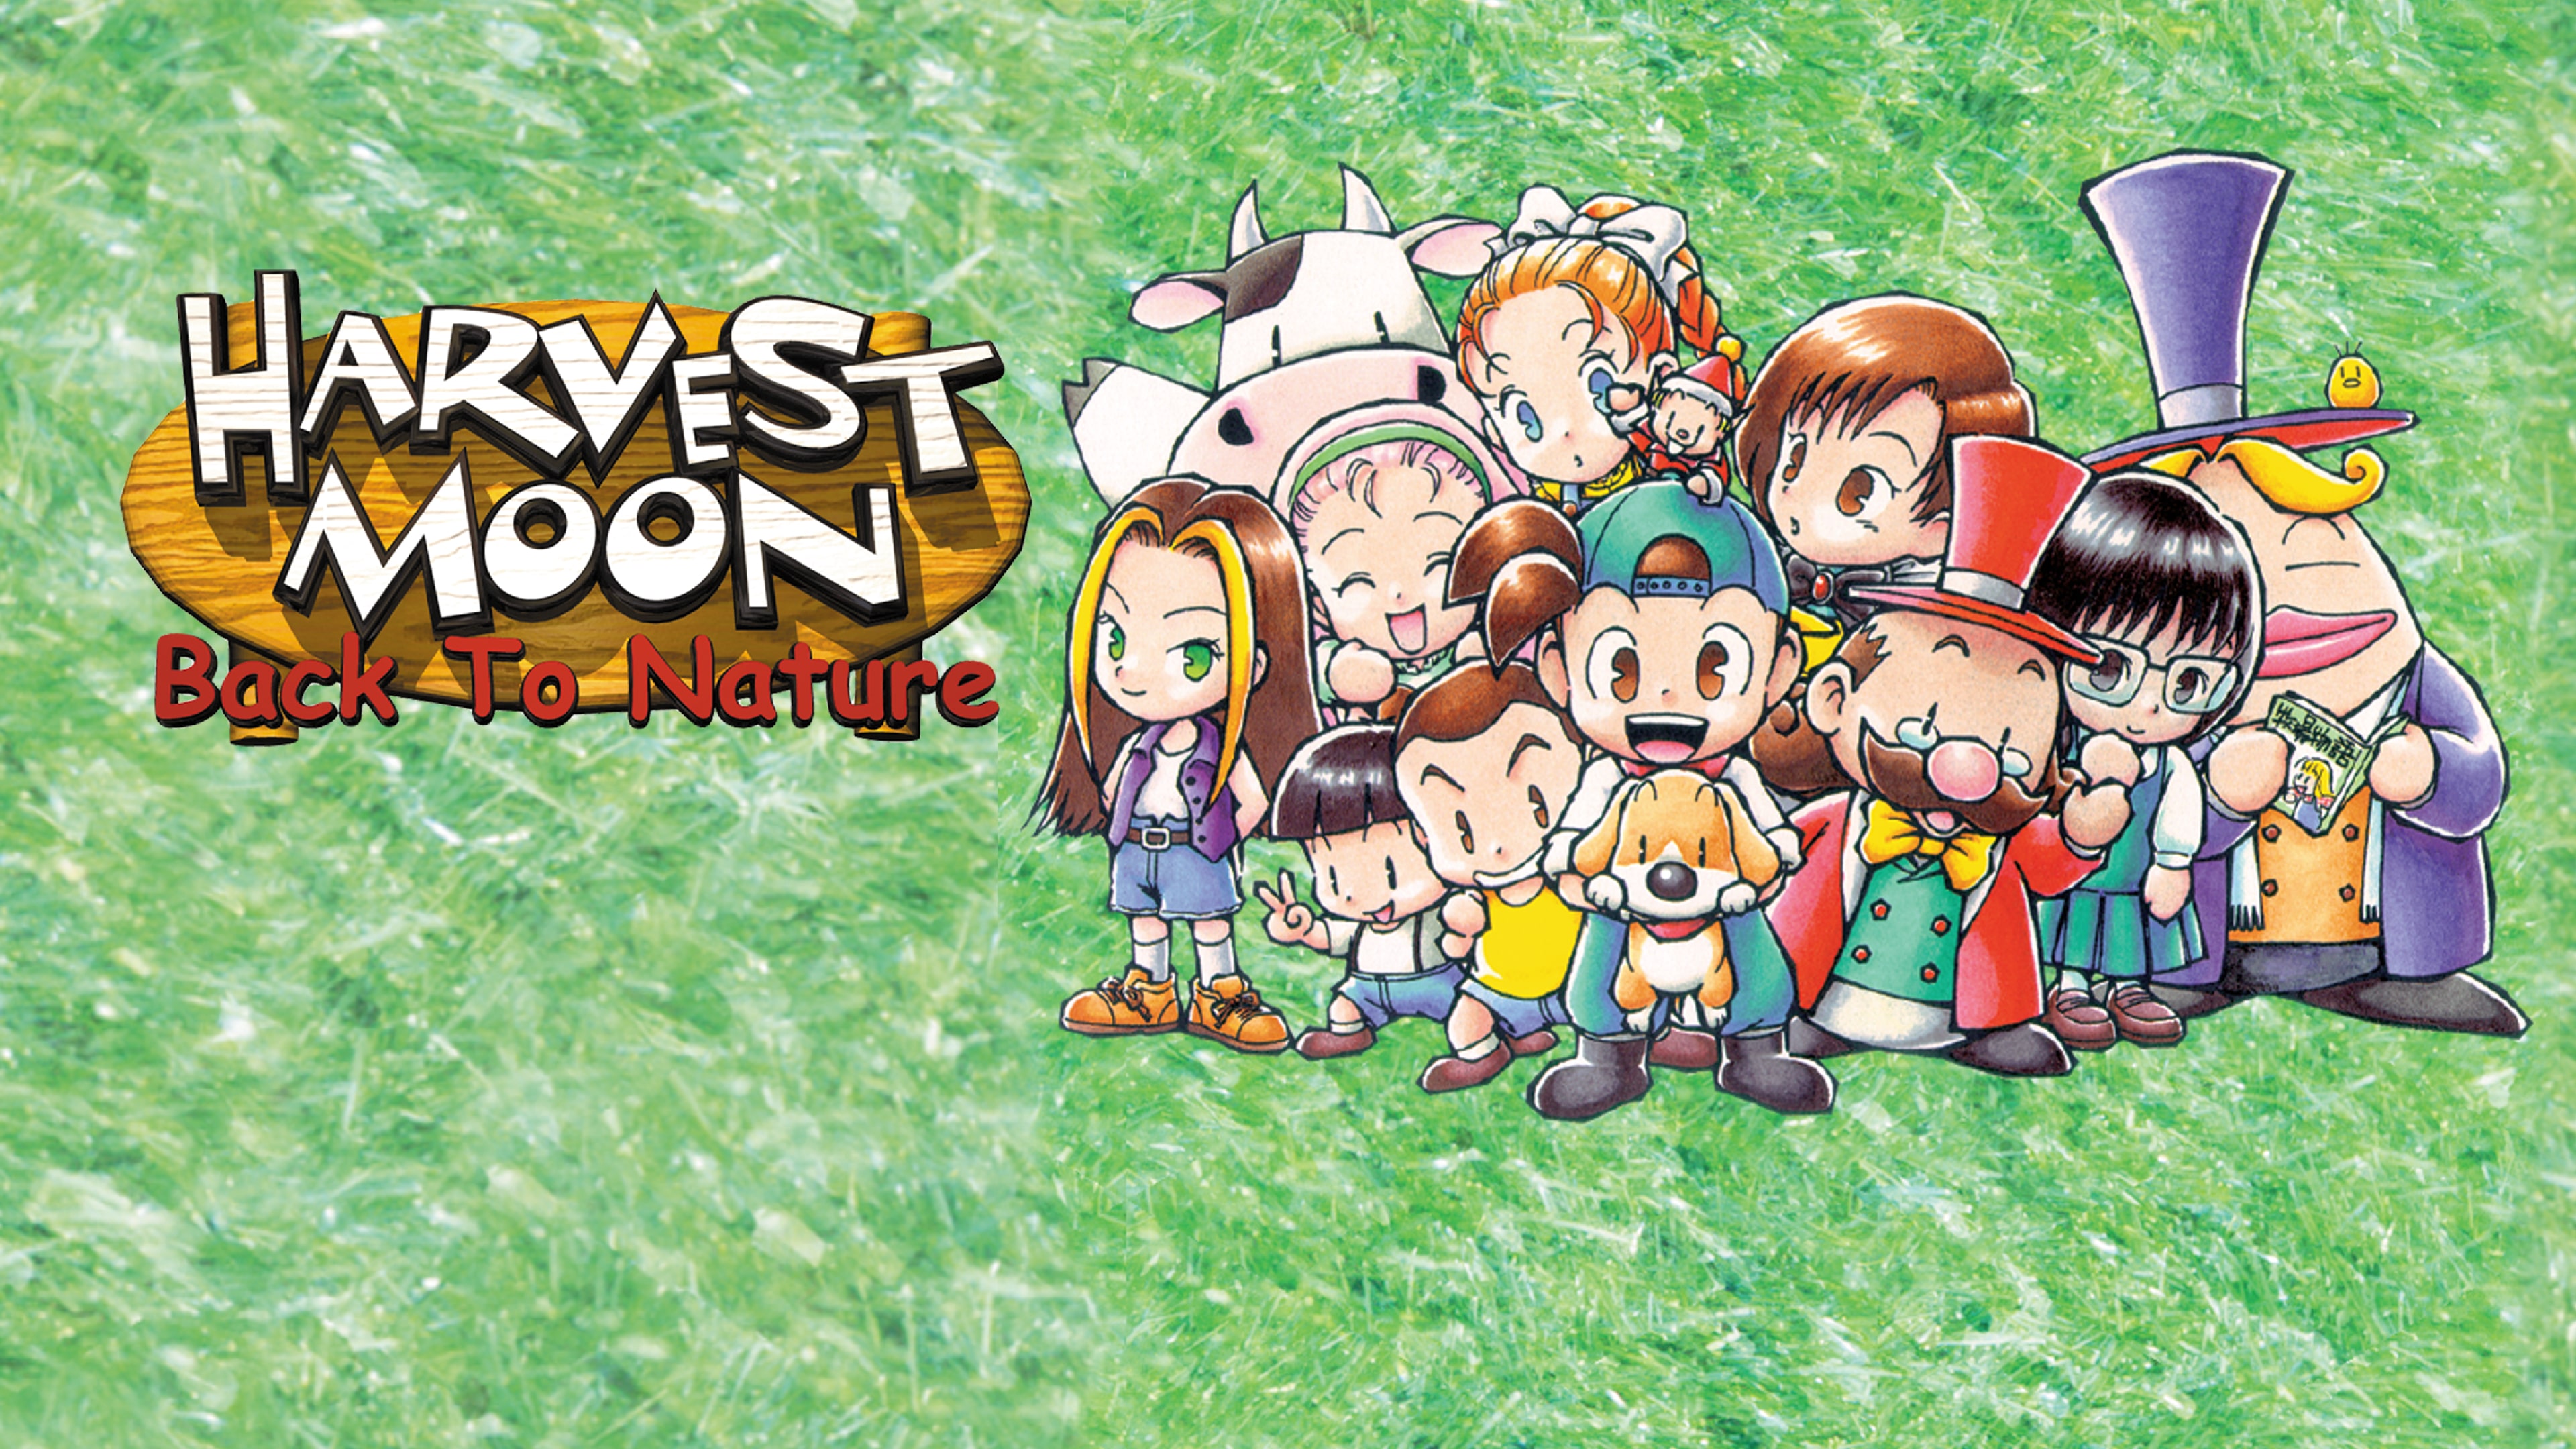 Harvest Moon Back to Nature (Clássico Ps1) Midia Digital Ps3 - WR Games Os  melhores jogos estão aqui!!!!